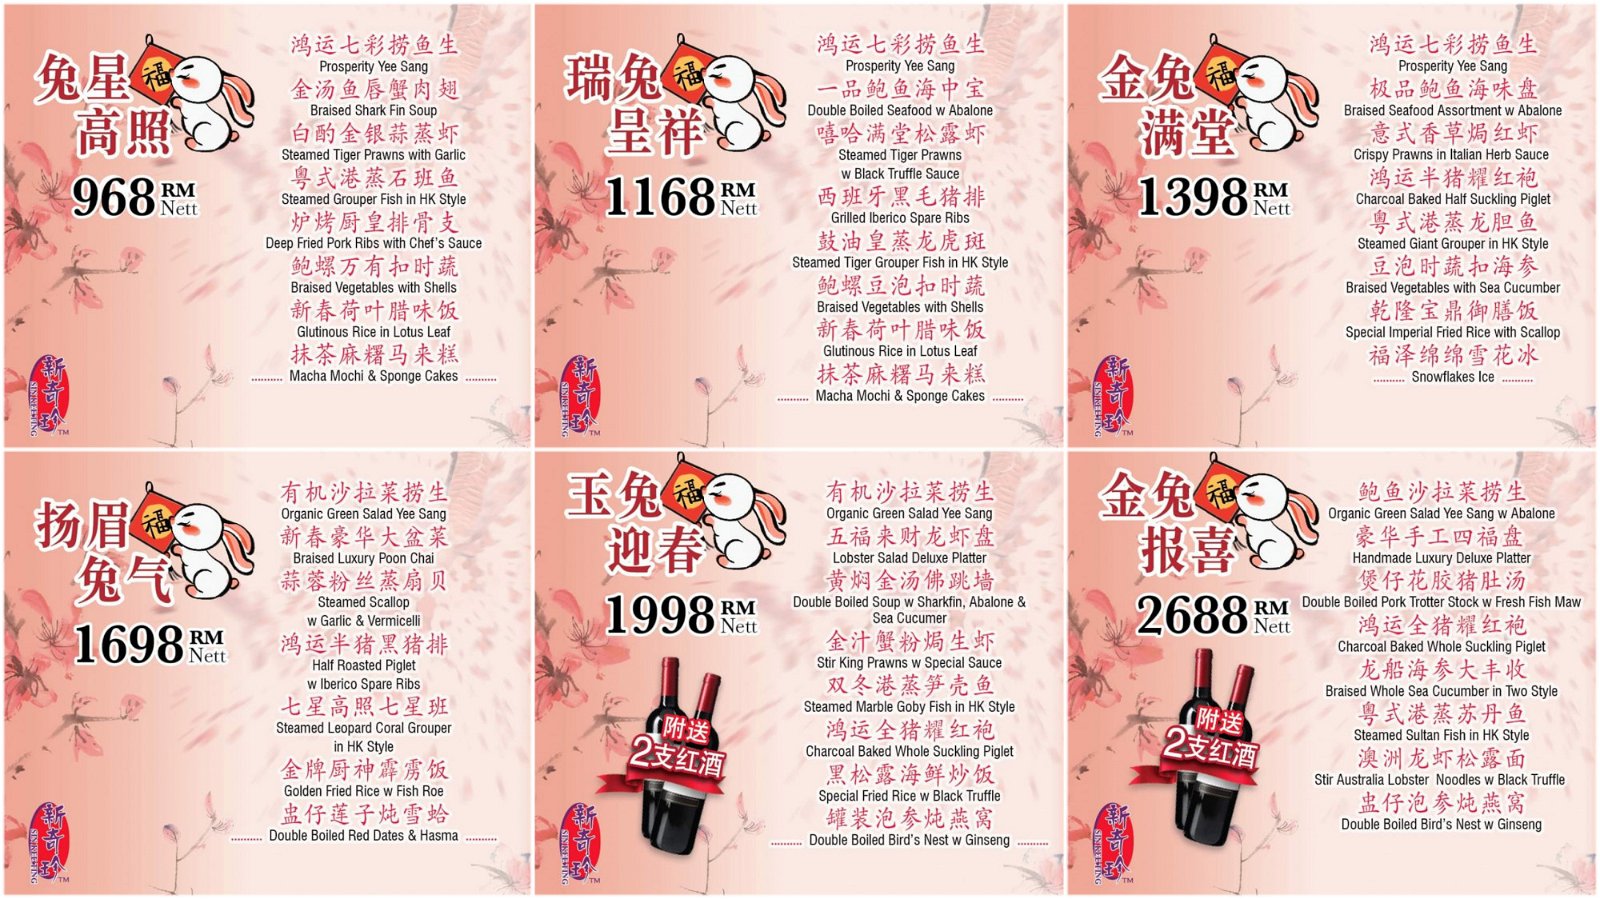 新奇珍推出的团圆饭配套有6种价位供选择。